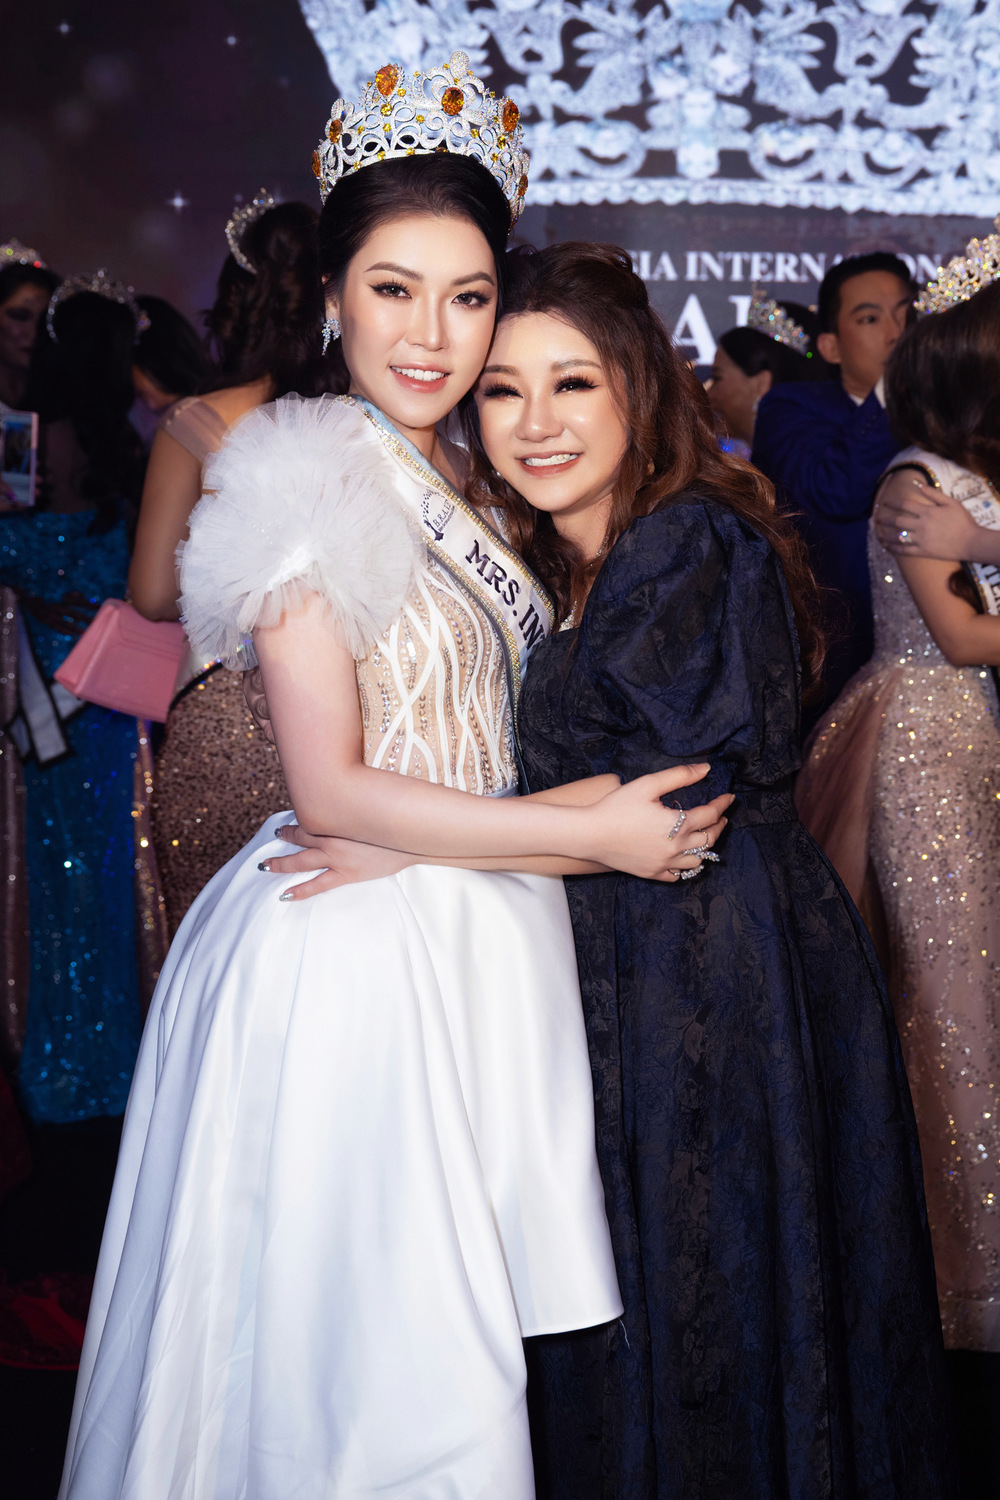 Hoa hậu Trần Hà Trâm Anh, CEO Vũ Thái “xuất khẩu” đầu năm sang Mã Lai để chấm thi - Ảnh 7.